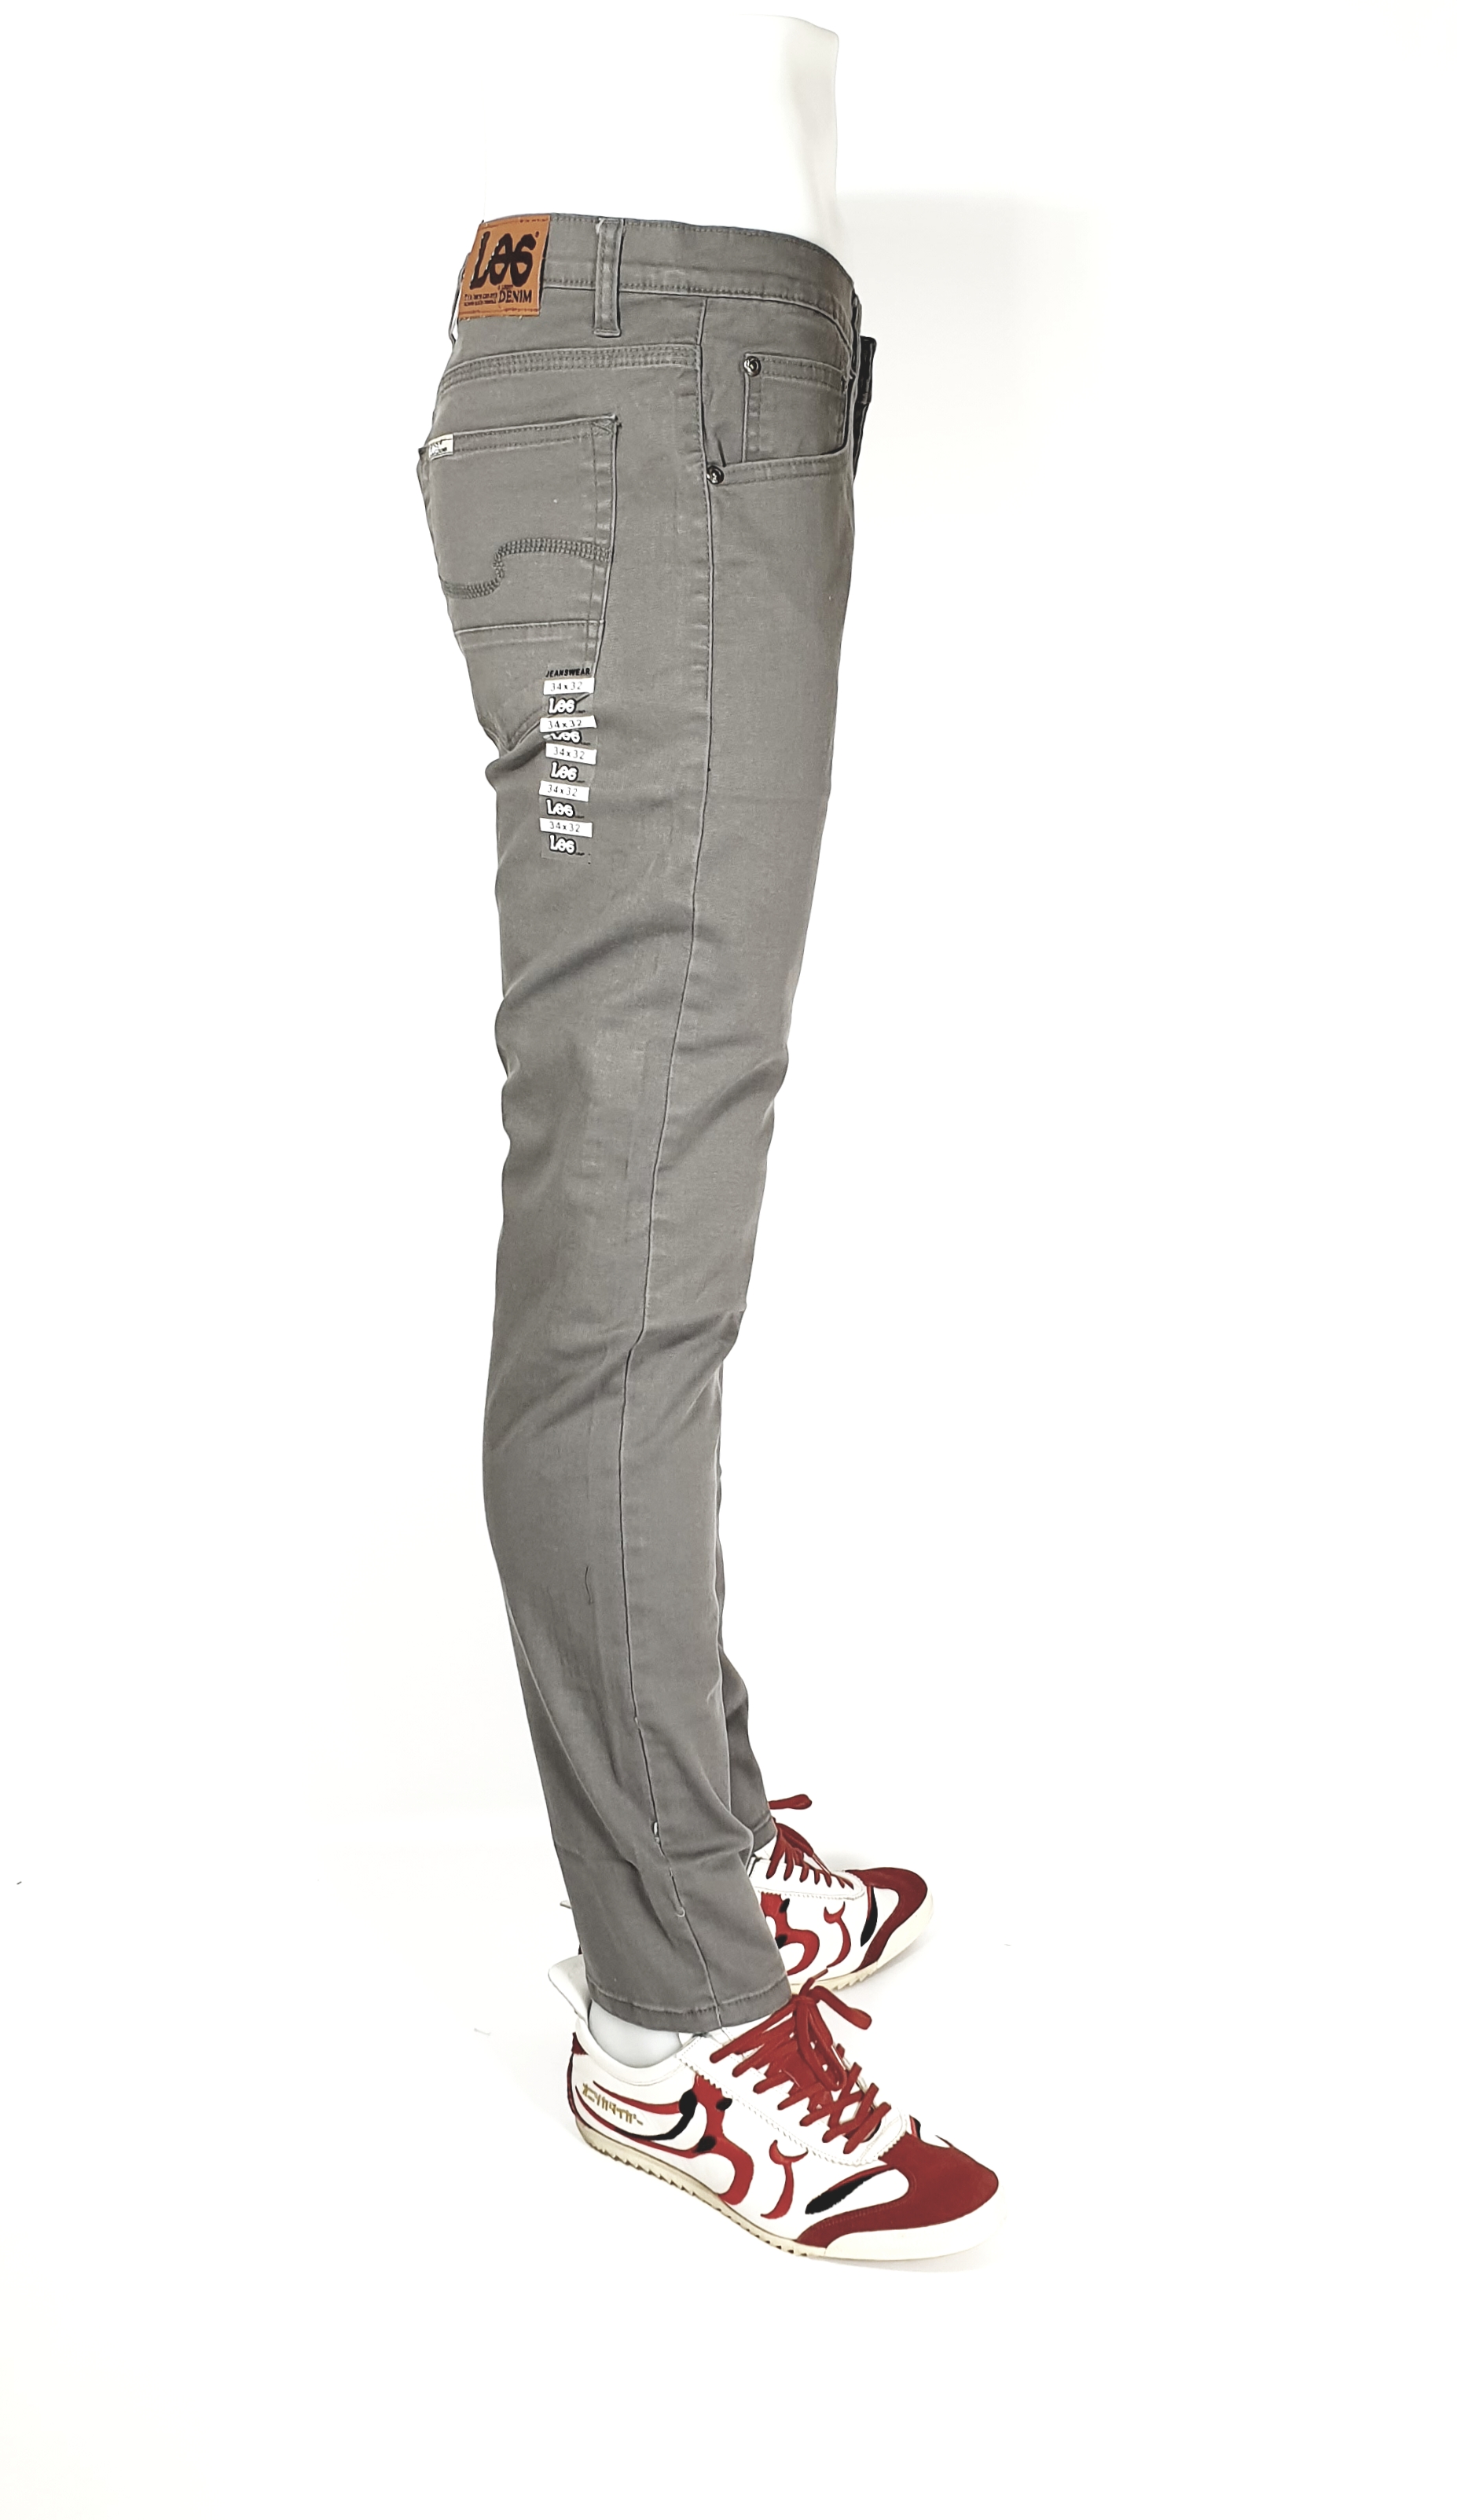 กางเกงเดฟสีผ้ายืด กางเกงขายาวเดฟ มีให้เลือกหลายสี ผ้ายืดอย่างดี Size 28-36